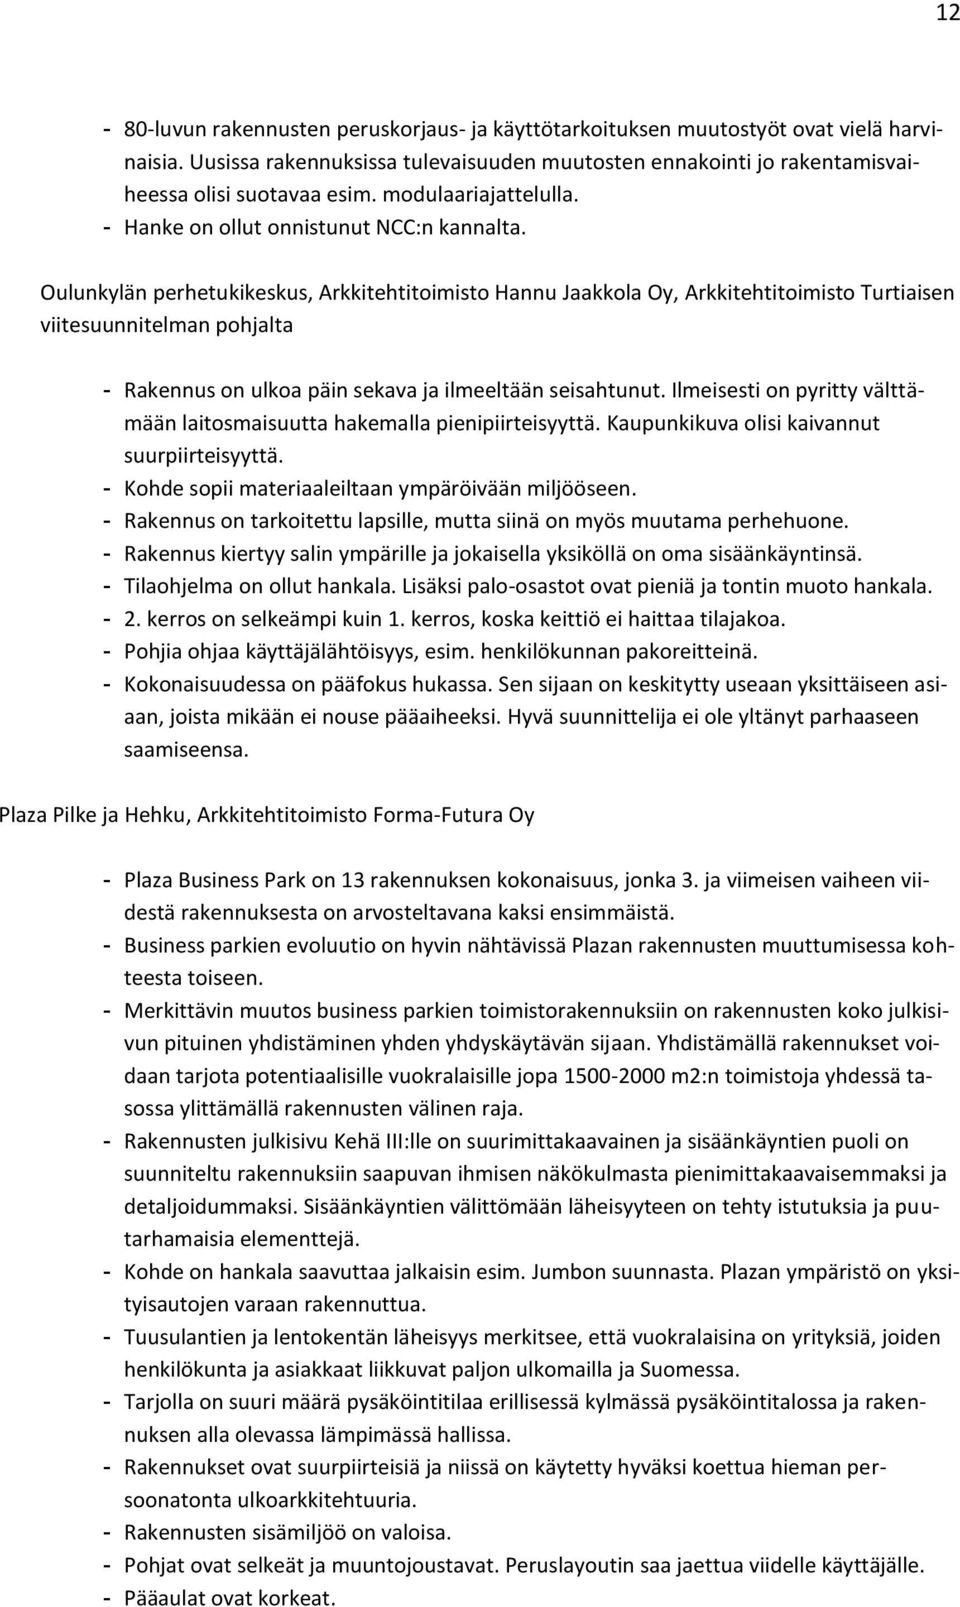 Oulunkylän perhetukikeskus, Arkkitehtitoimisto Hannu Jaakkola Oy, Arkkitehtitoimisto Turtiaisen viitesuunnitelman pohjalta - Rakennus on ulkoa päin sekava ja ilmeeltään seisahtunut.